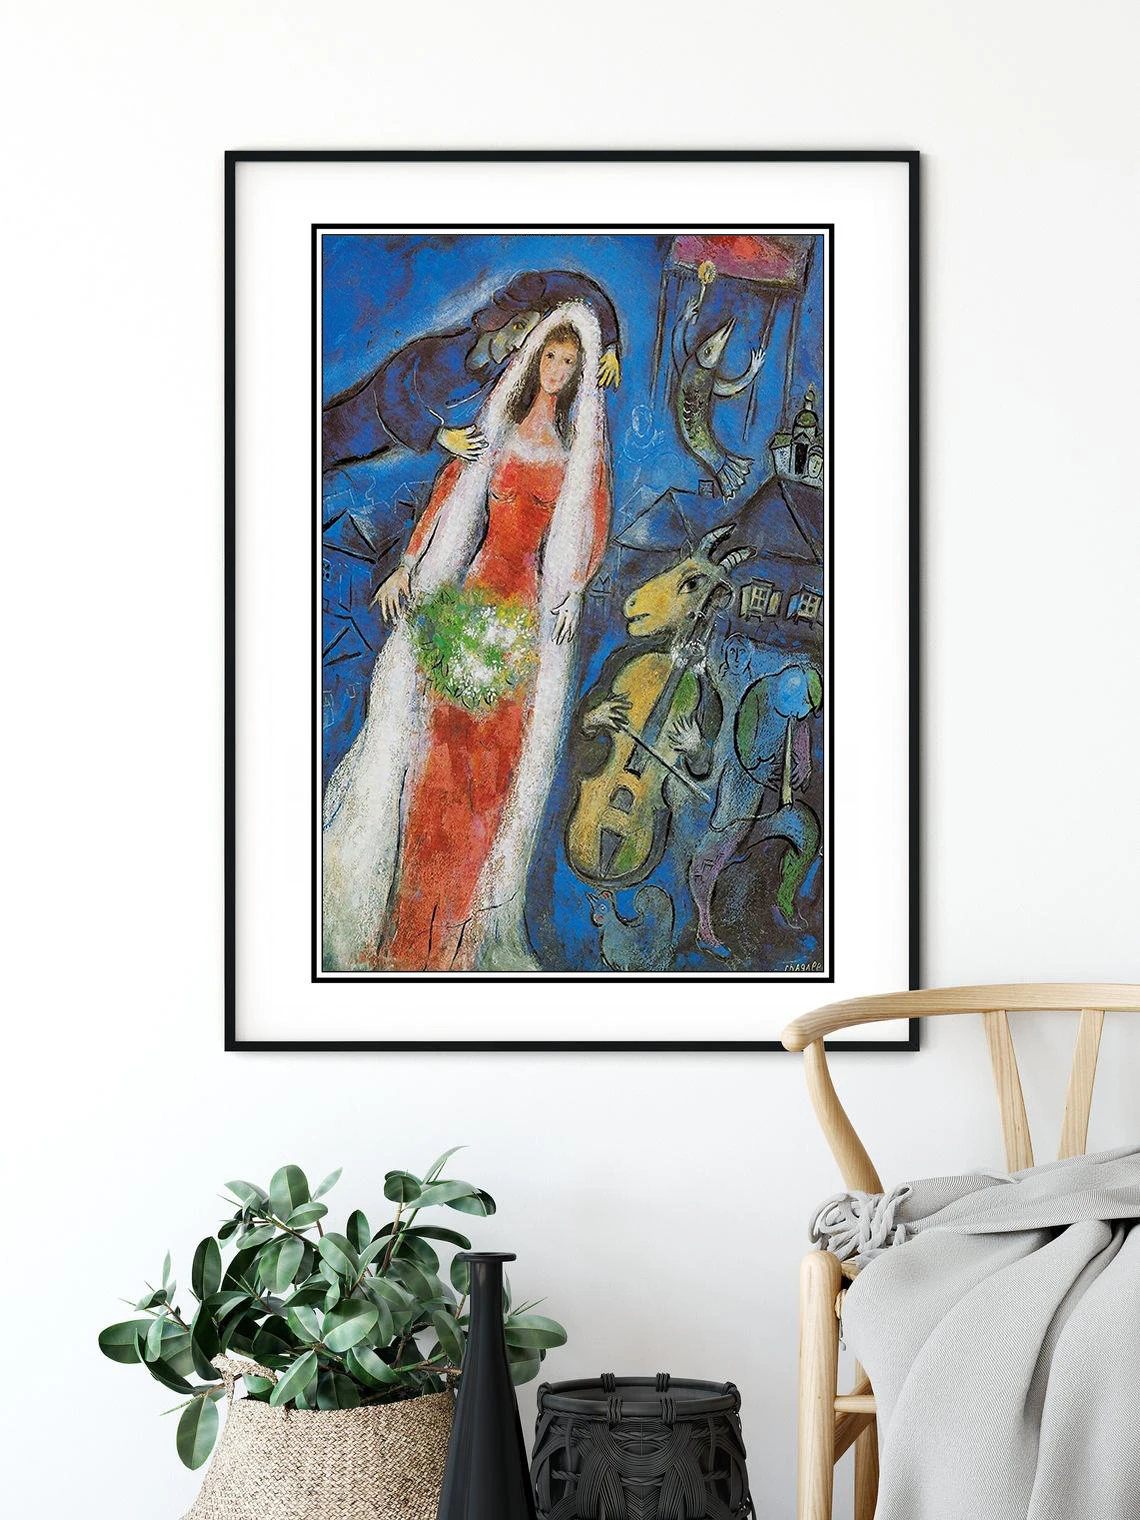 Chagall постер живописи художественный постер. Декор стены дома.